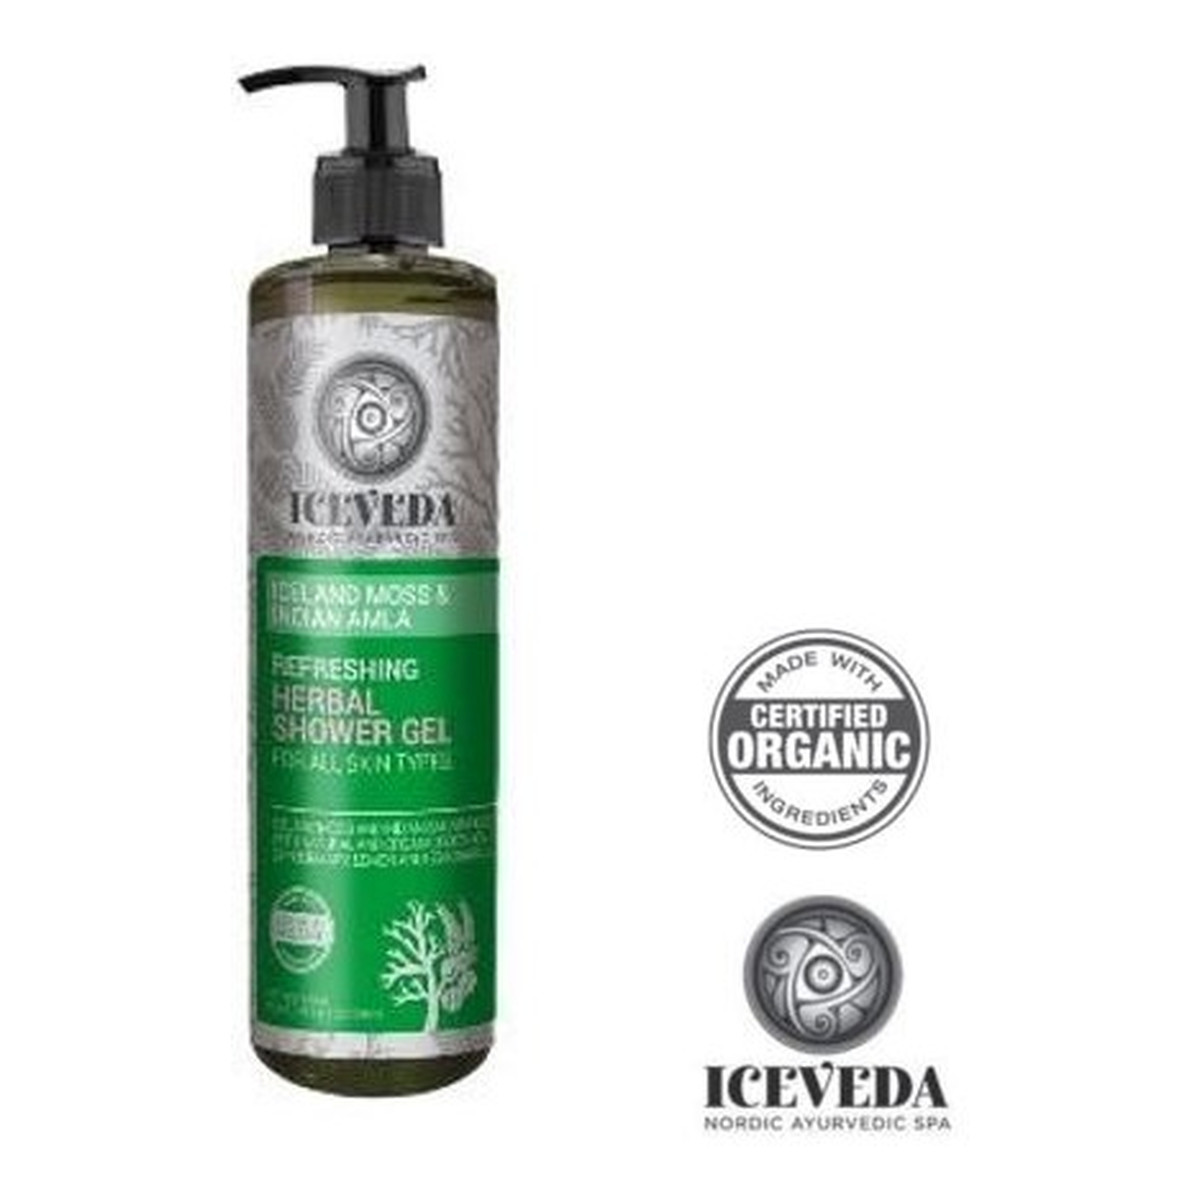 Iceveda Płucnica islandzka & Amla indyjska Odświeżający ziołowy żel pod prysznic dla wszystkich typów skóry 280ml